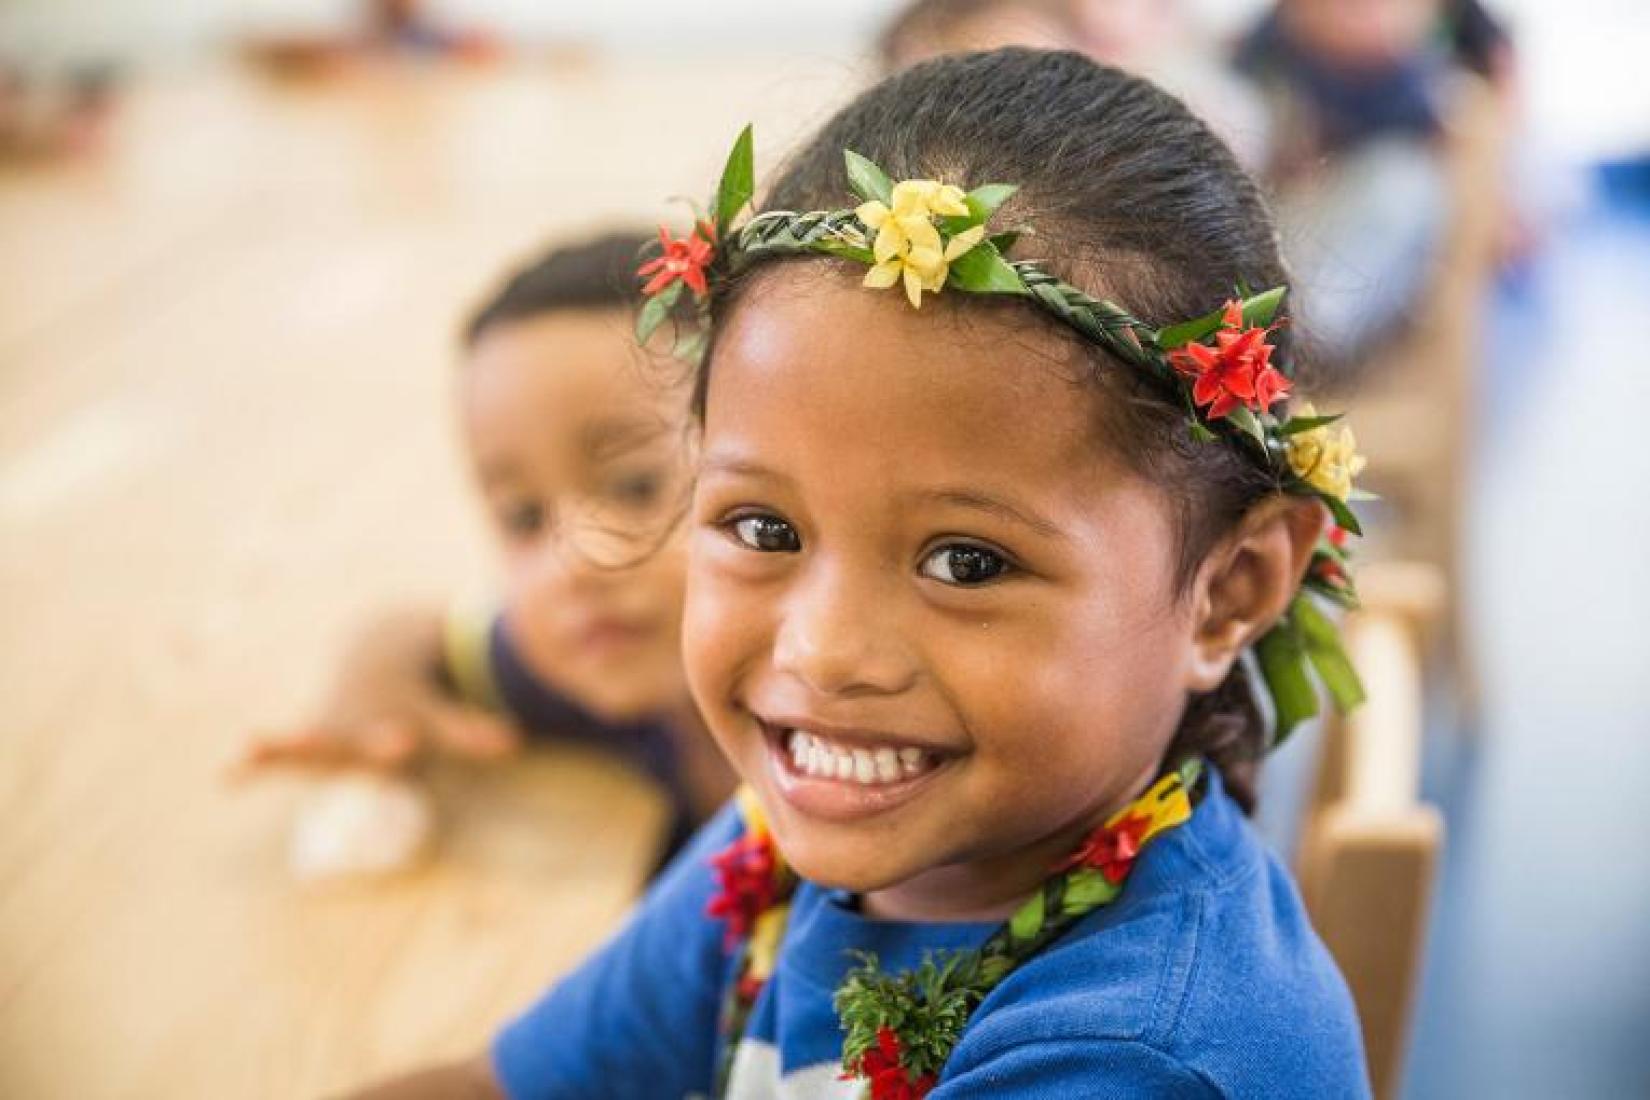 A young Tongan girl smiles at the camera